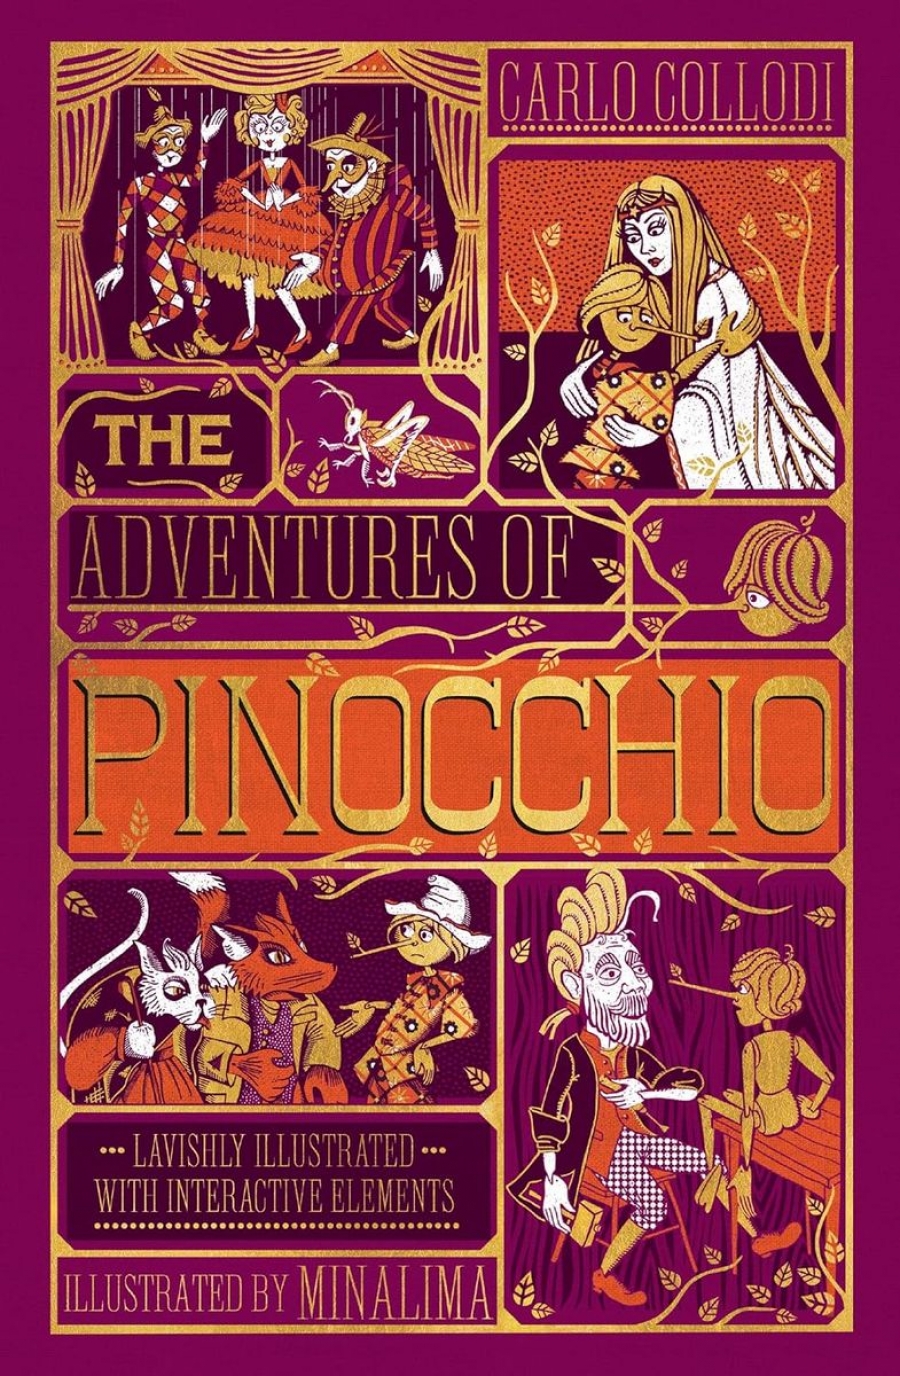 Collodi Carlo The Adventures of Pinocchio 